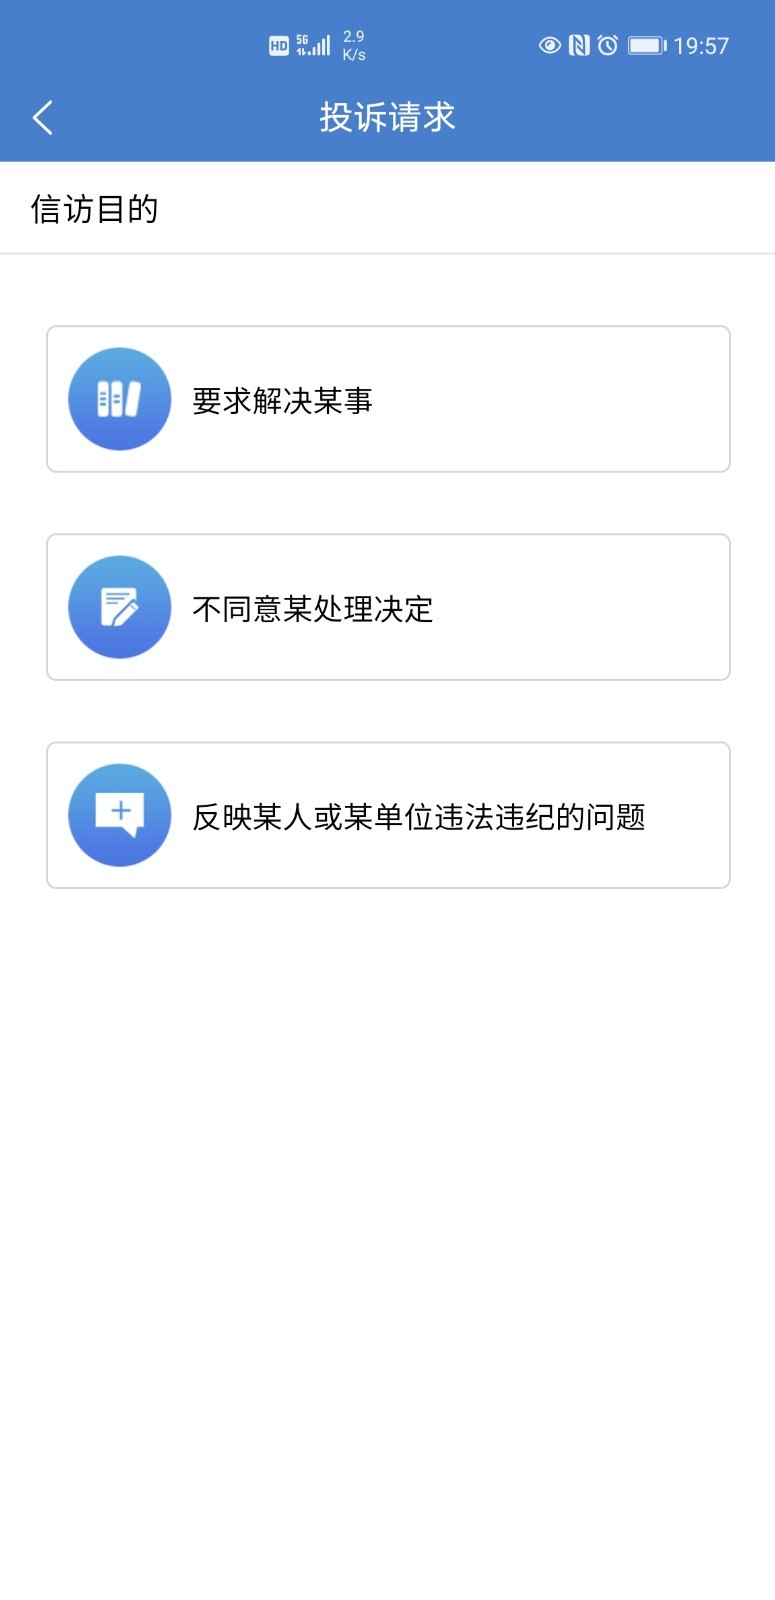 河南手机信访办网上投诉平台v1.8 官方版